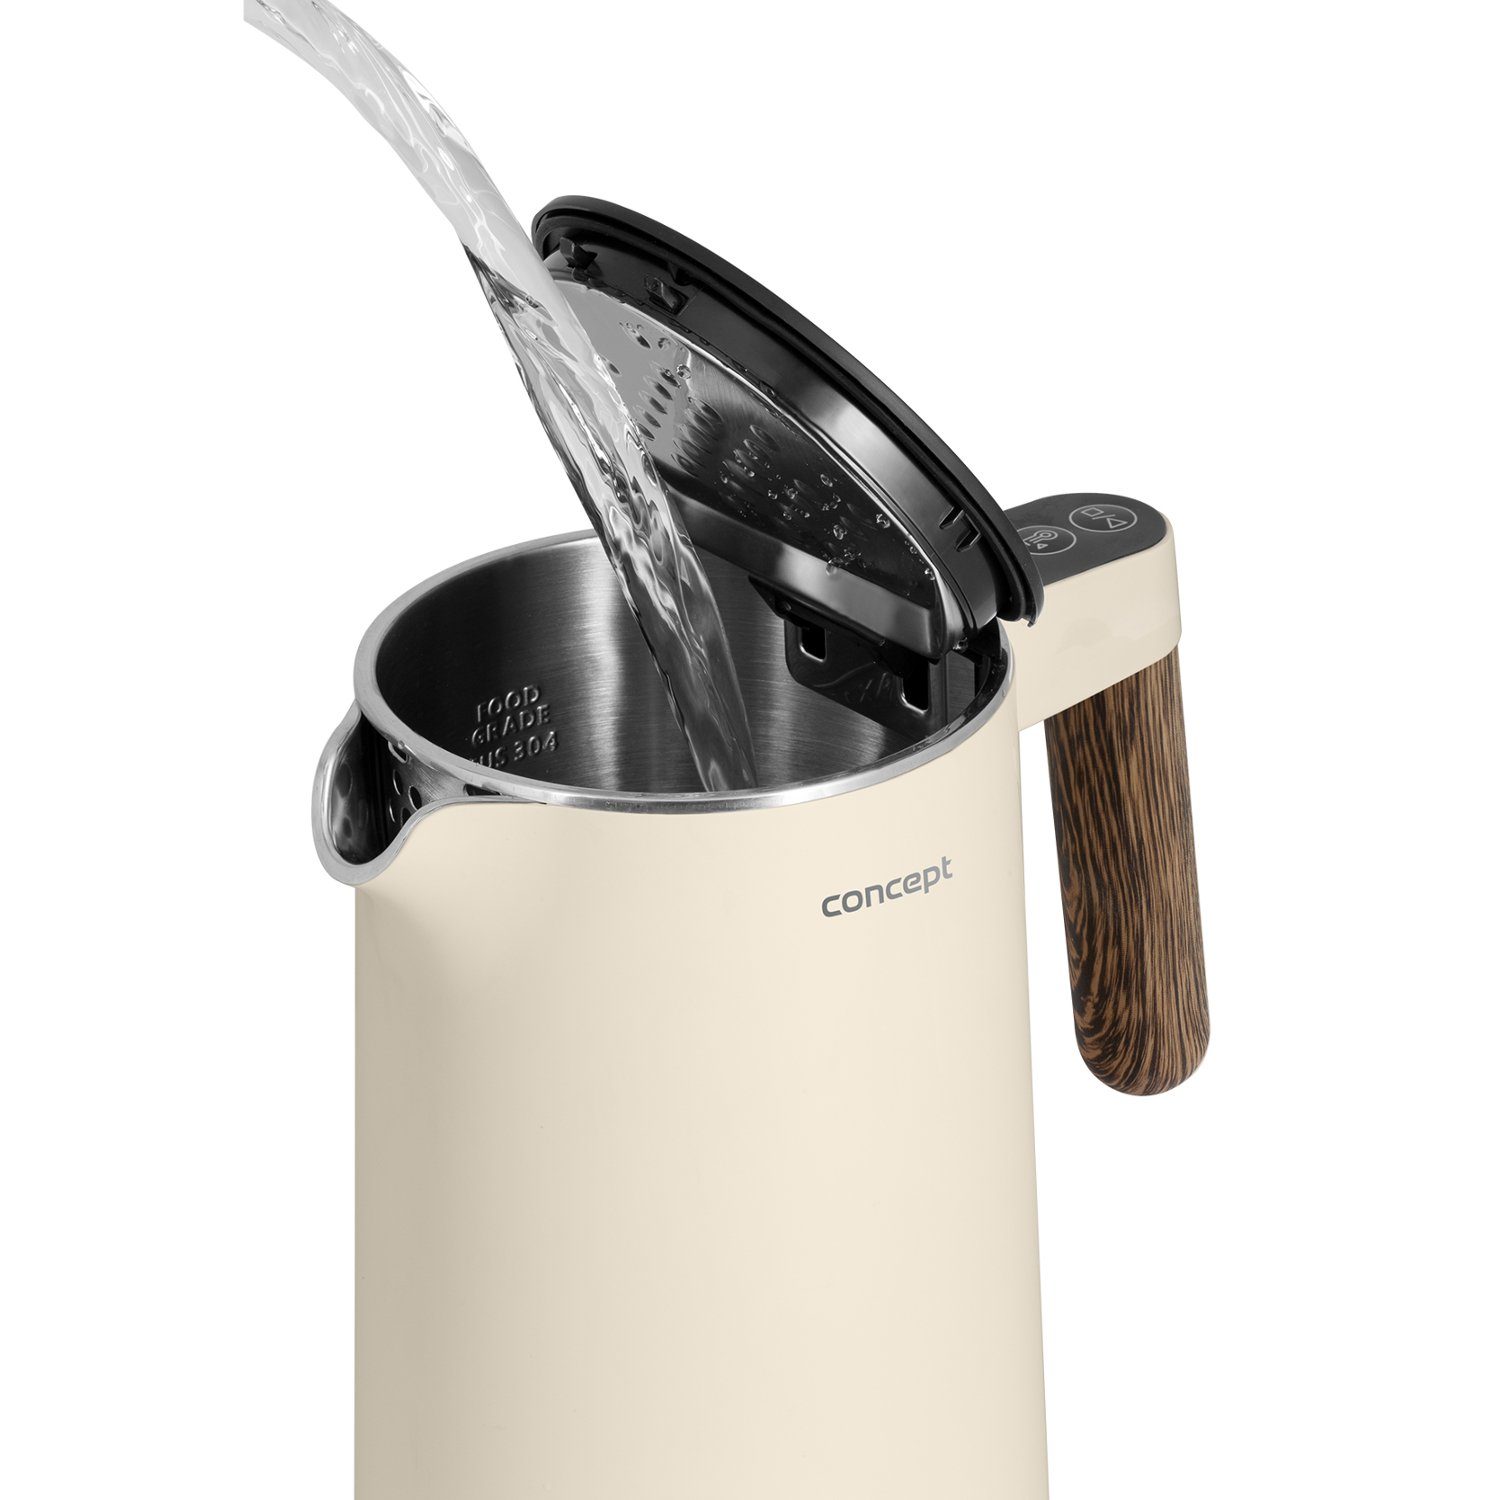 Edelstahl Concept 2200,00 1.5 Wasserkocher Wasserkocher Vanille aus W, Norwood RK3304/RK3305, l,